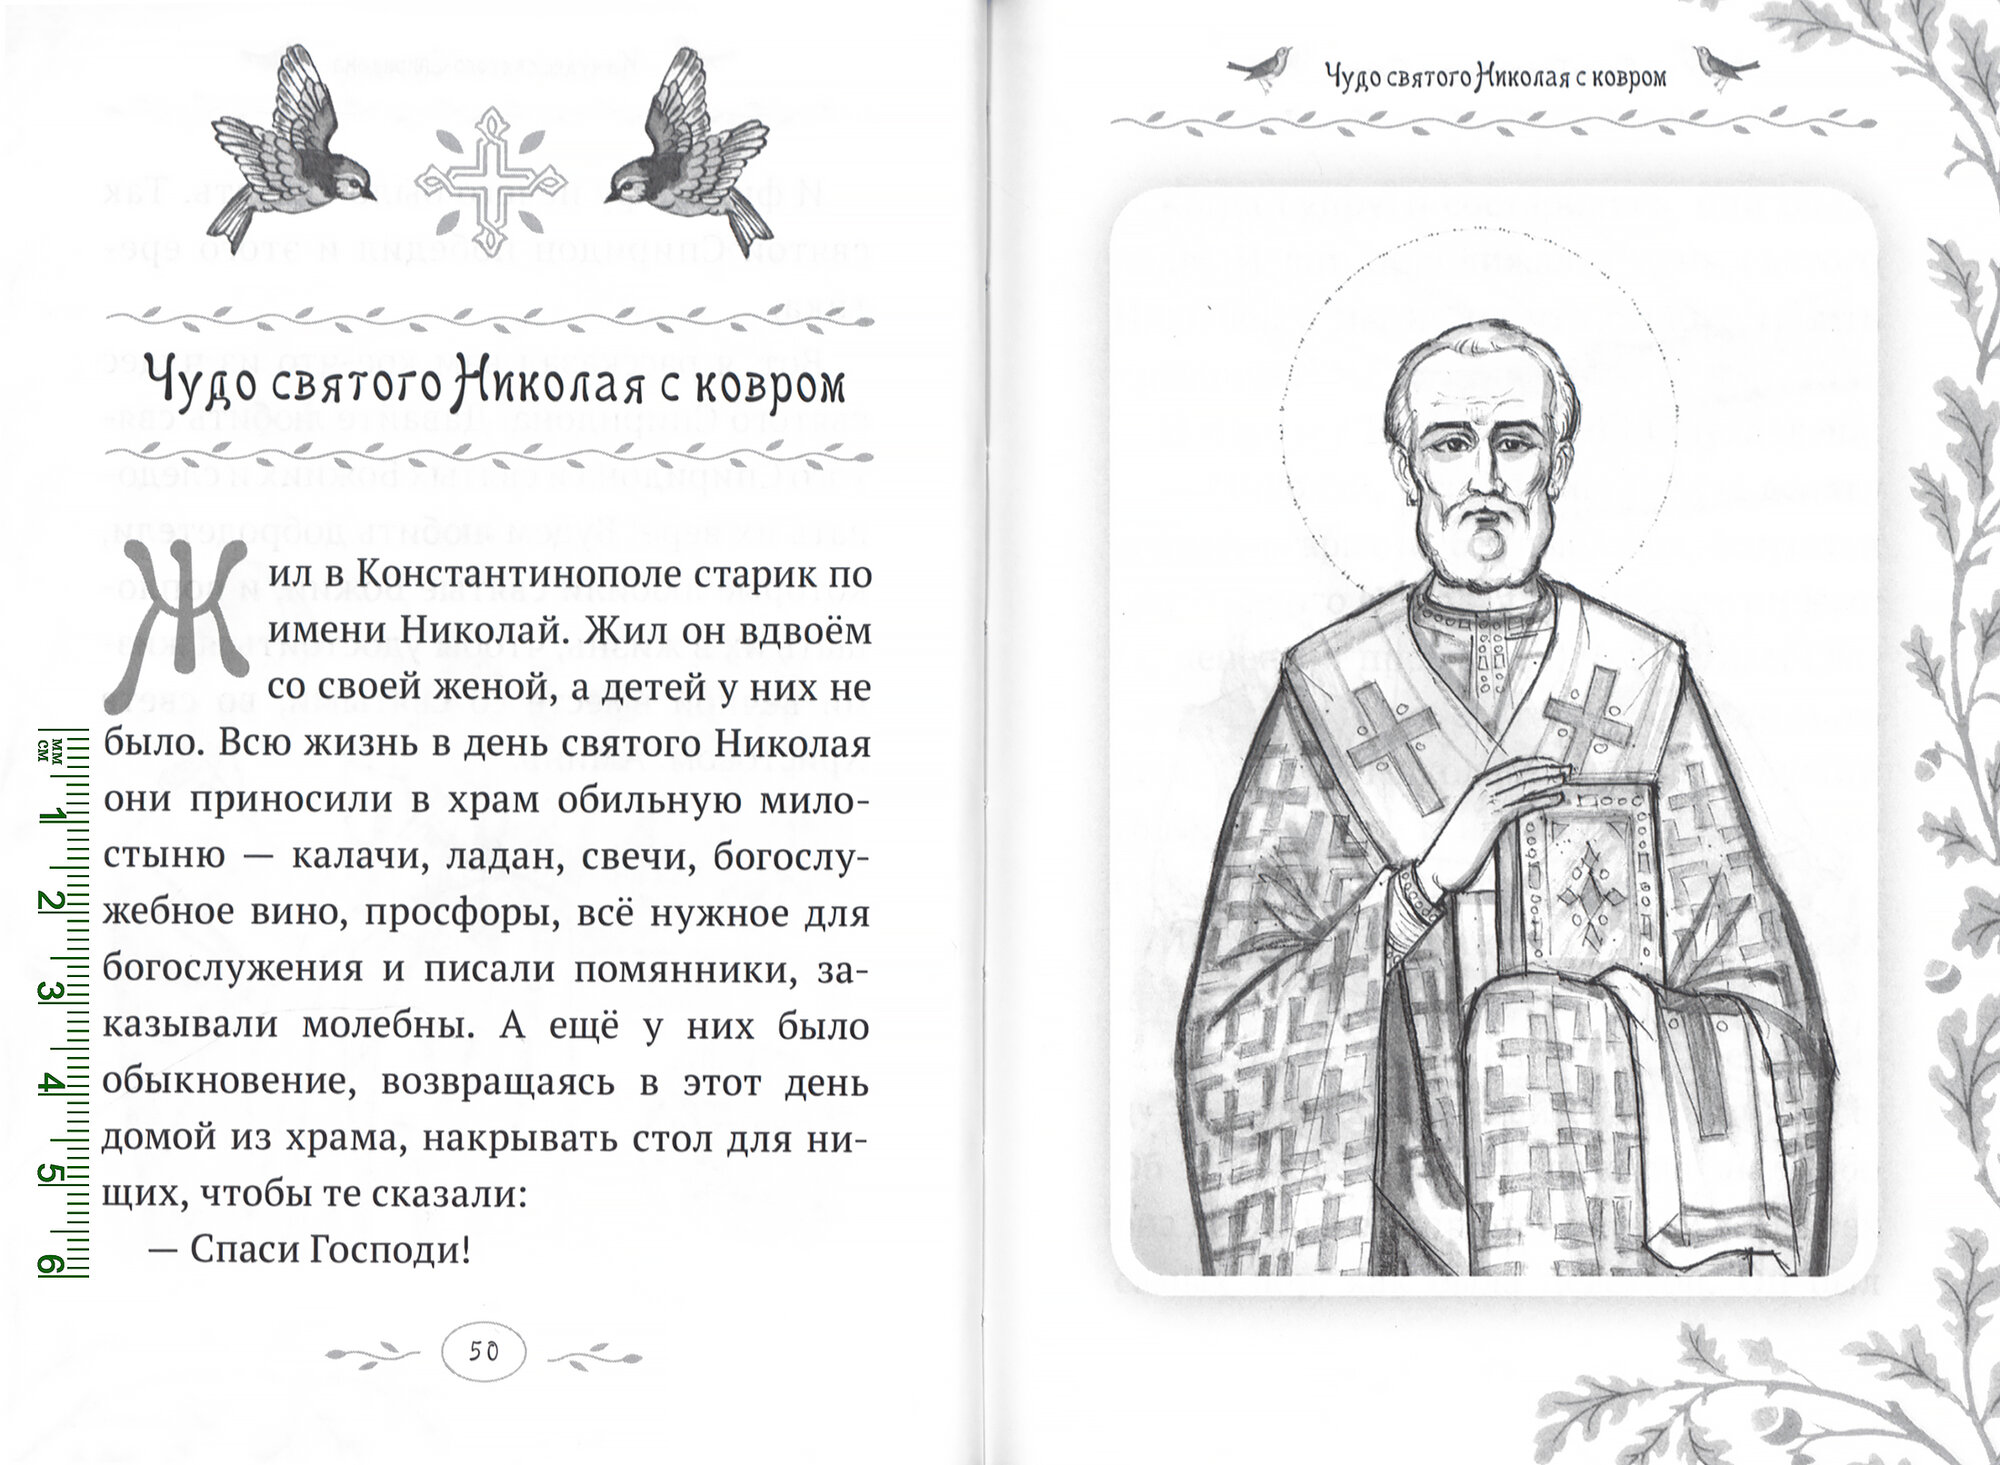 Дивен Бог во святых Своих. Истории румынского старца для детей и взрослых - фото №2